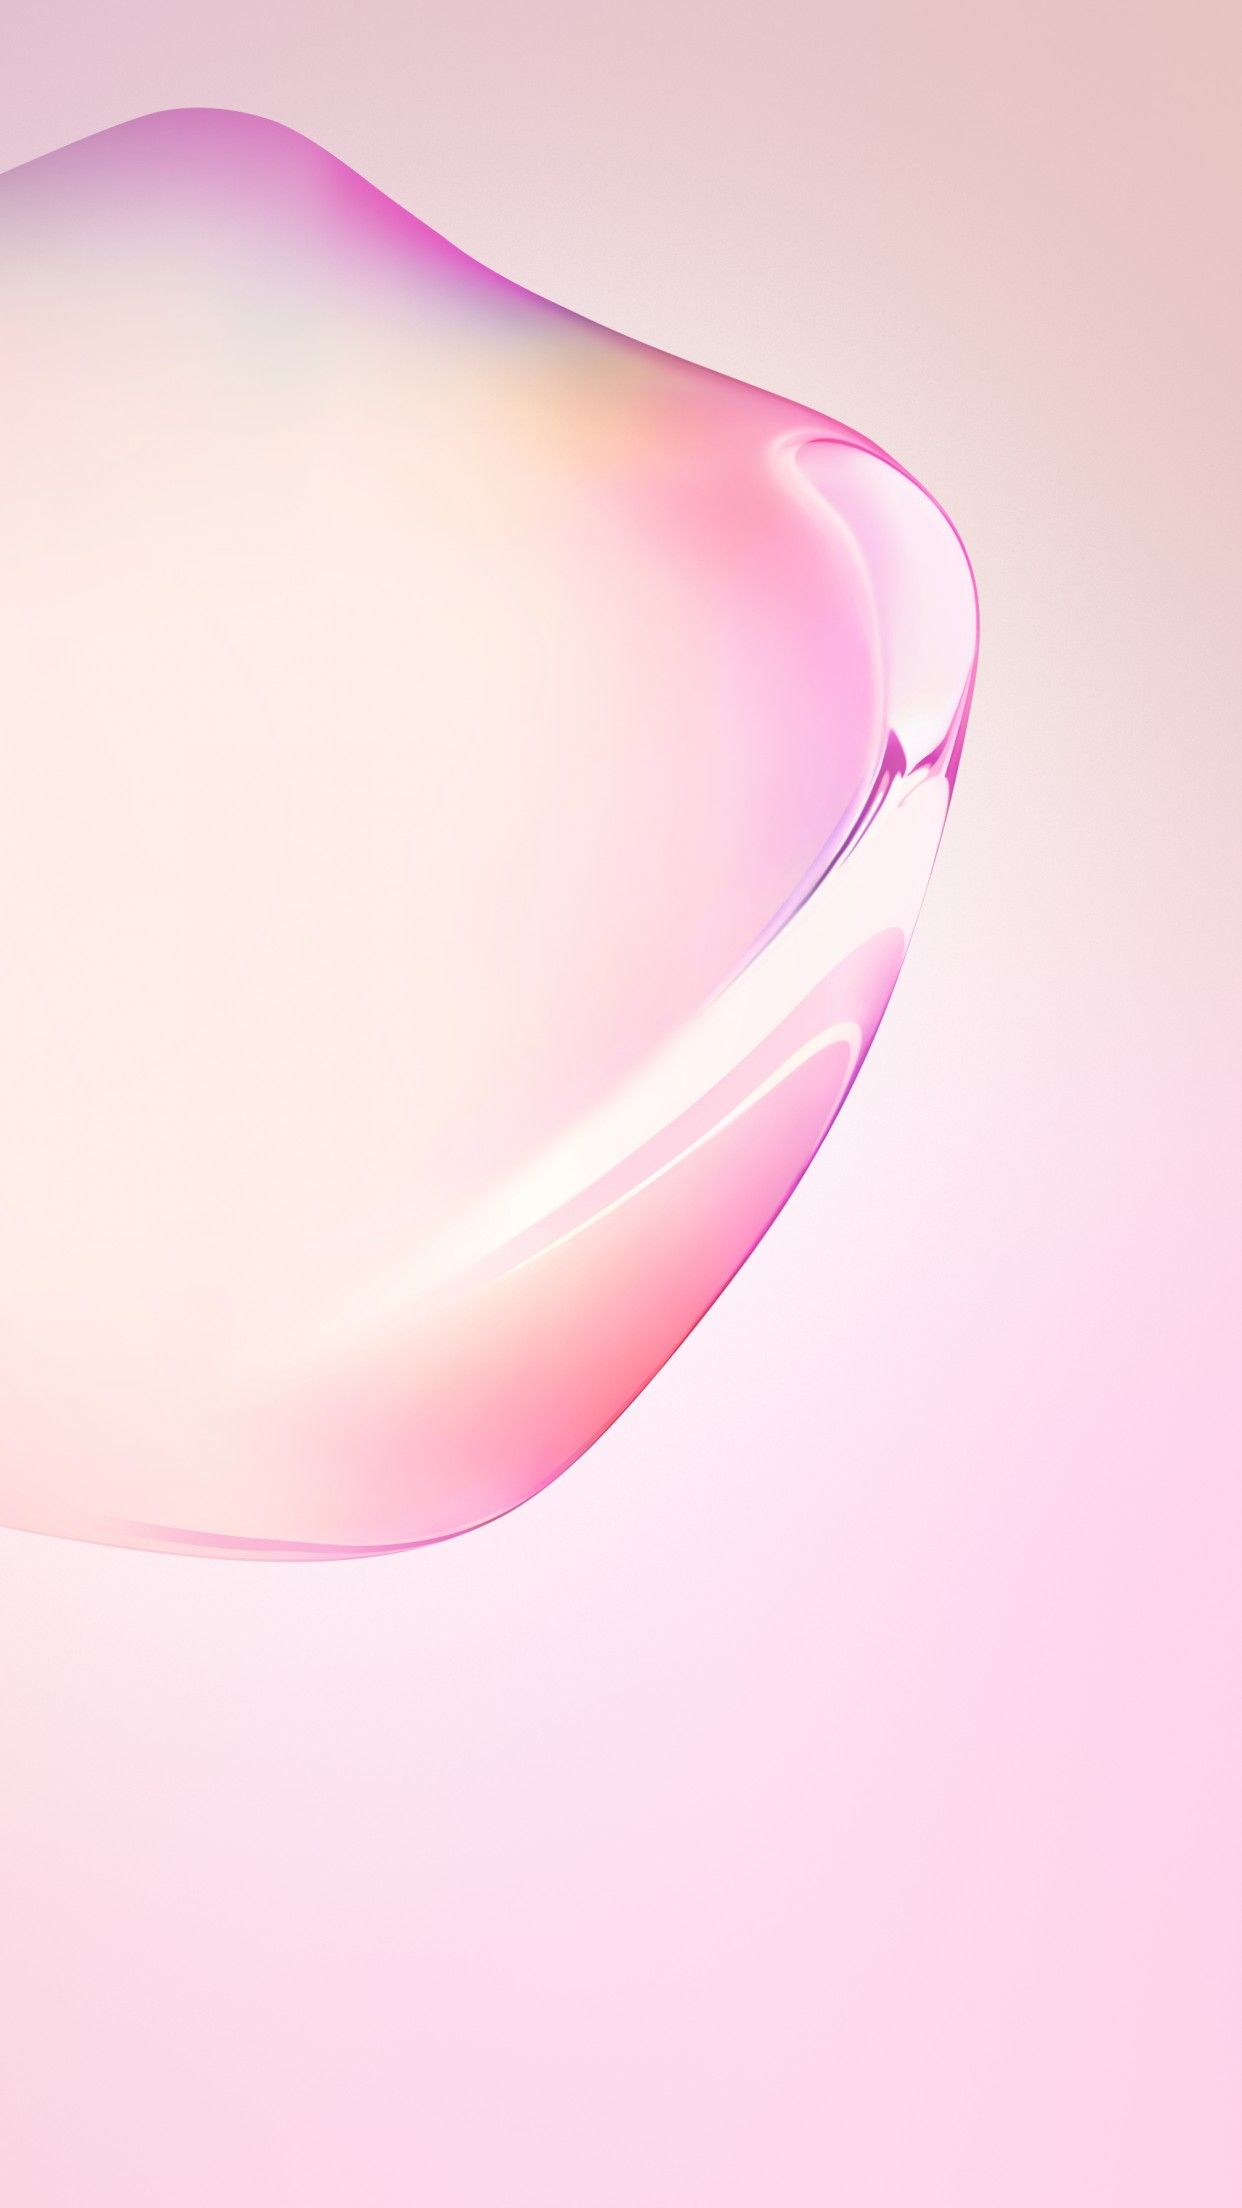 Hãy tìm hiểu về ảnh nền iPhone 13 Pink Wallpapers - Wallpaper Cave ngay hôm nay. Với những mau sắc tươi sáng và thiết kế tinh tế, những hình nền này sẽ làm cho màn hình điện thoại của bạn trở nên tuyệt đẹp hơn bao giờ hết. Dễ dàng tải và sử dụng miễn phí.